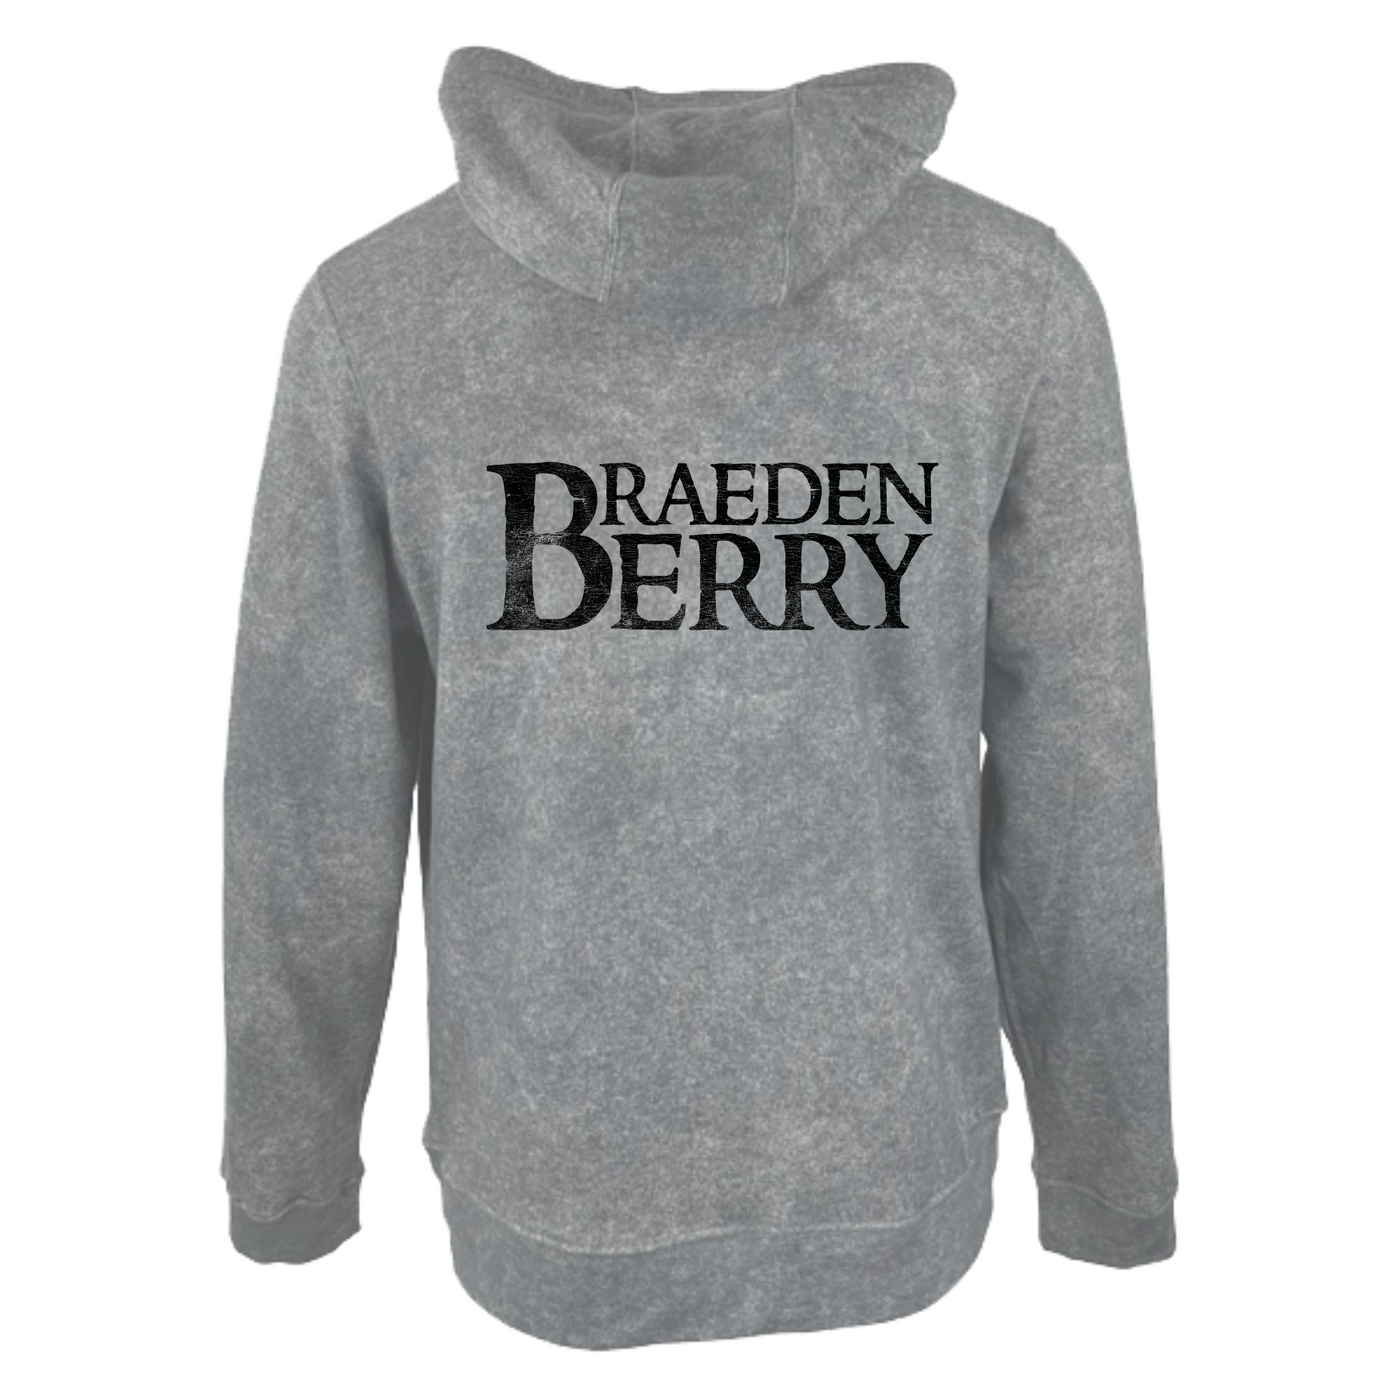 Braeden Berry - Logo Hoodie: Vintage Grey